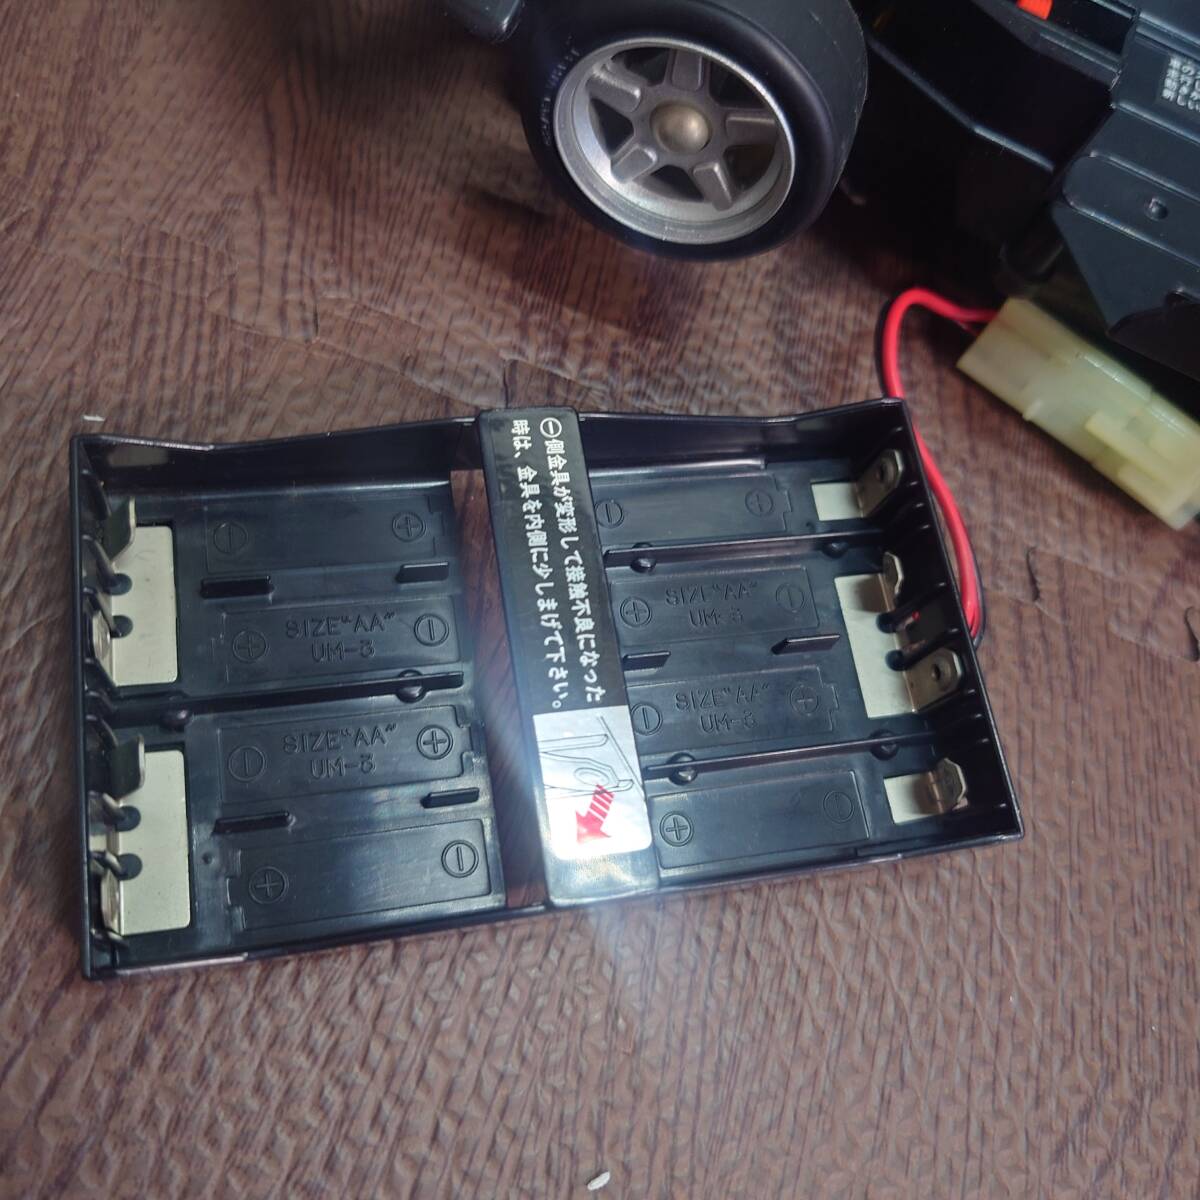 [ б/у ] Nikko радиоконтроллер BMW850i 1/16 электрический радио контроль машина с ящиком NIKKO работоспособность не проверялась [ управление No.1129]